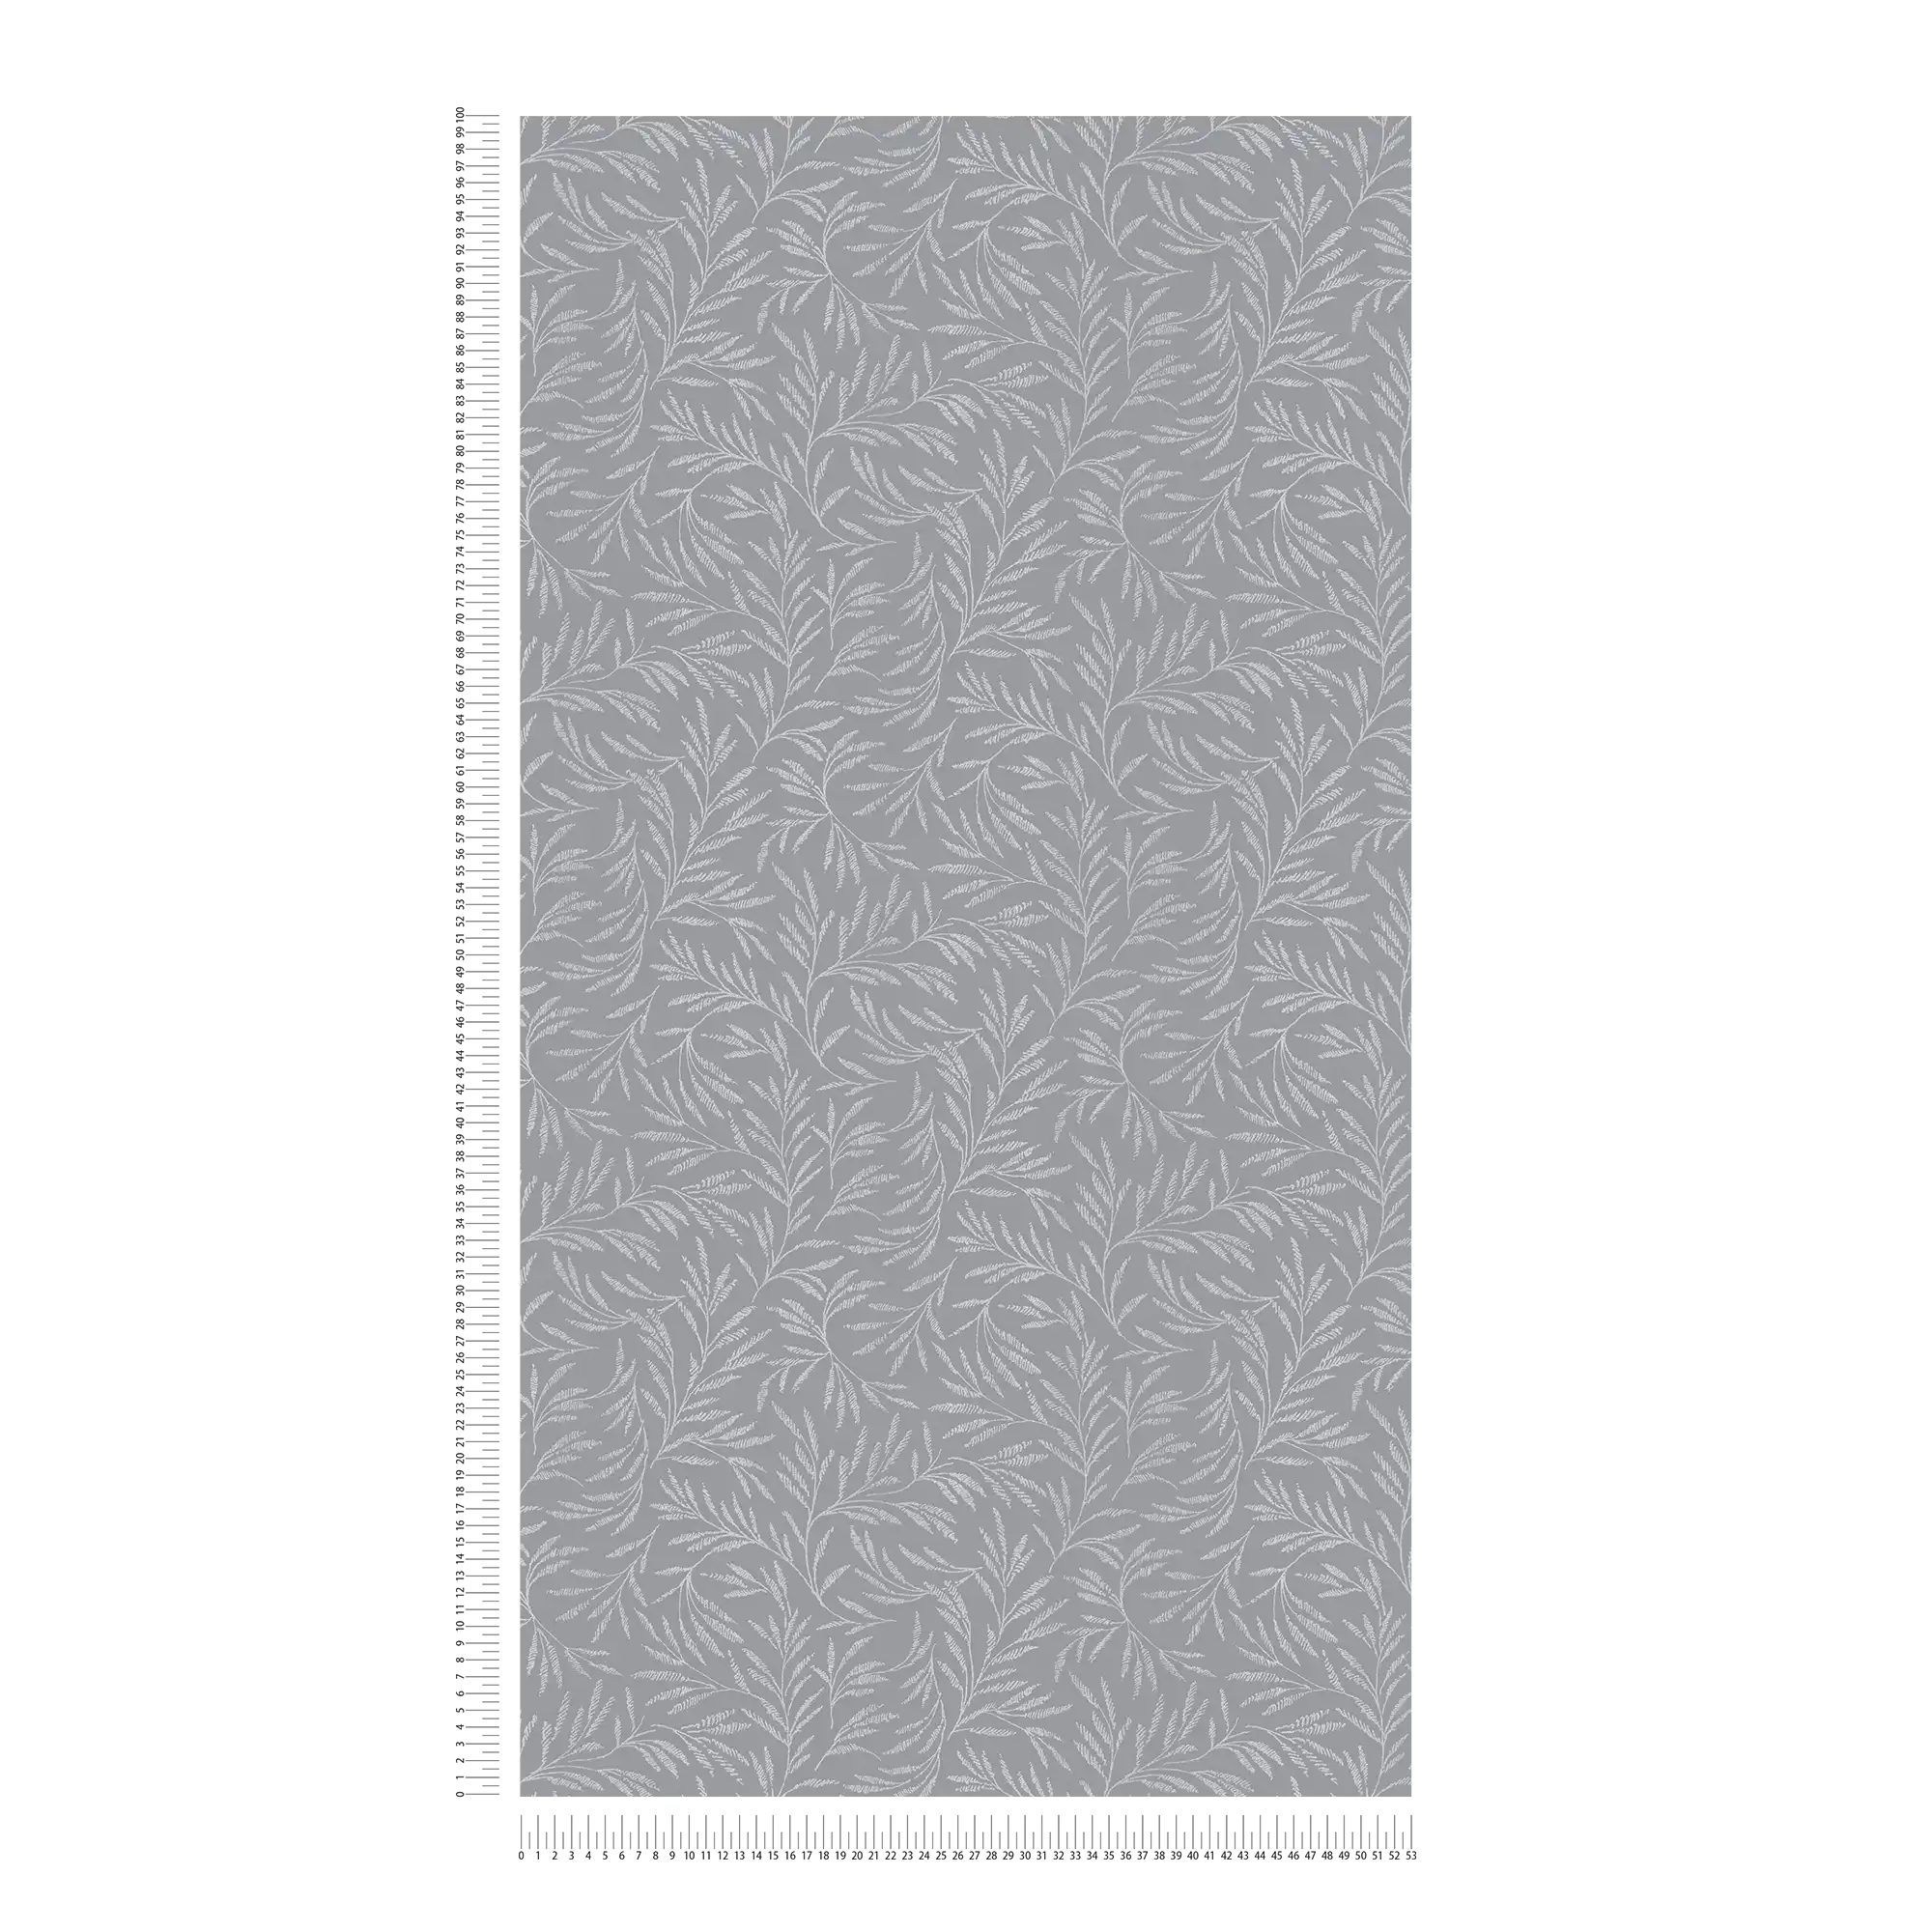             Papier peint intissé gris avec motif de feuilles argentées
        